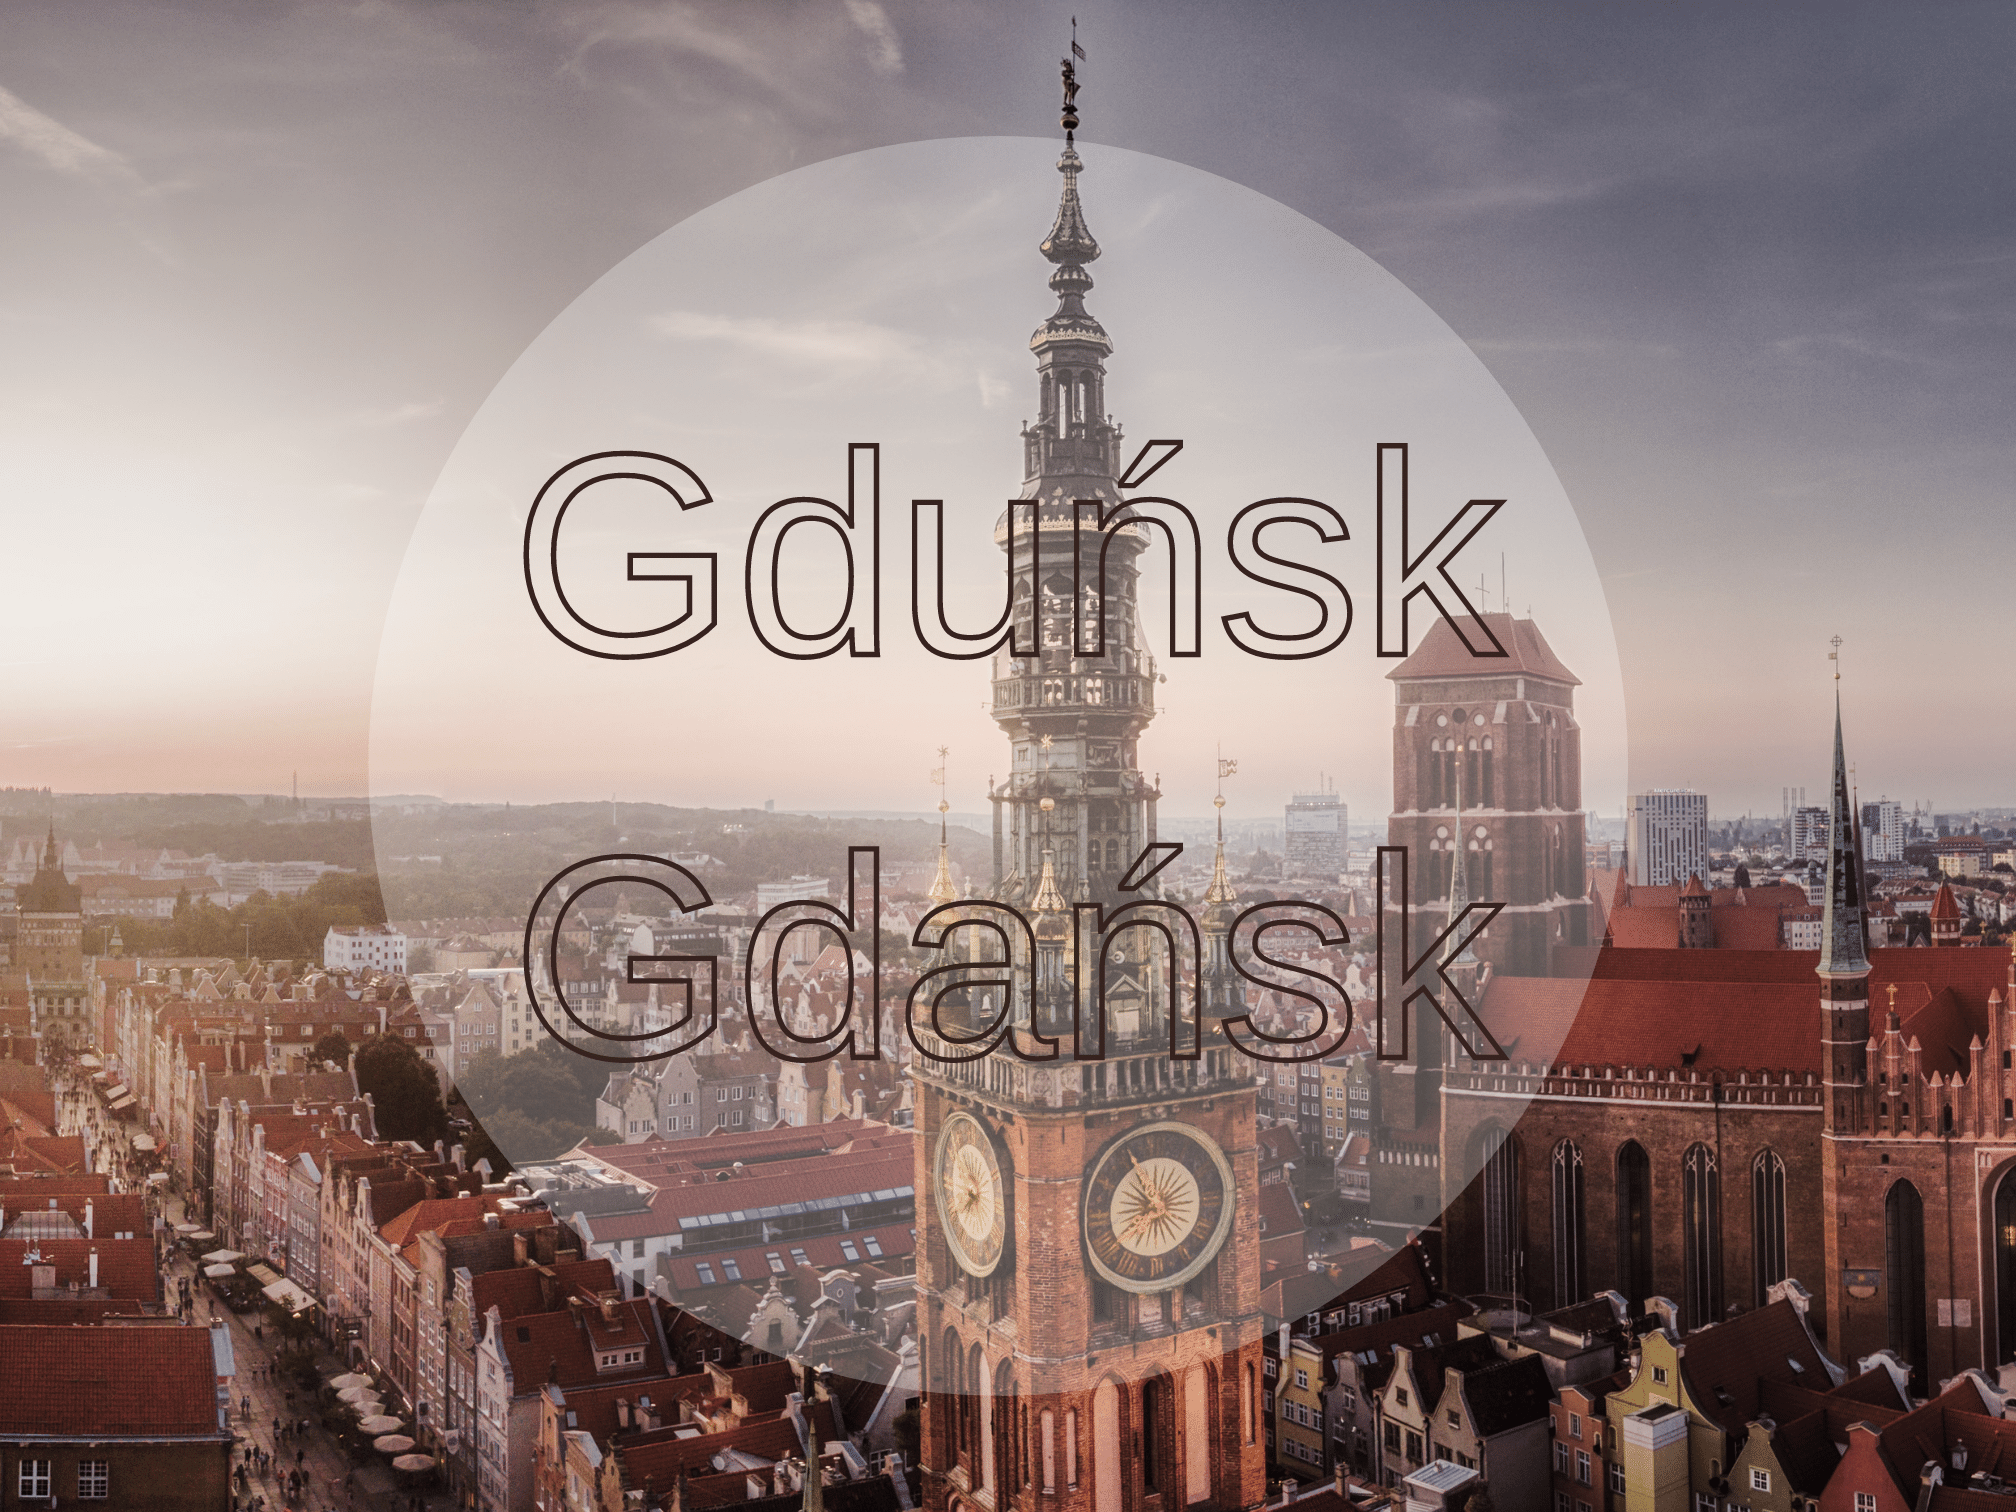 Gdańsk 2 - Atrakcje Gdańska. Czego nie można pominąć w Trójmiejskiej stolicy